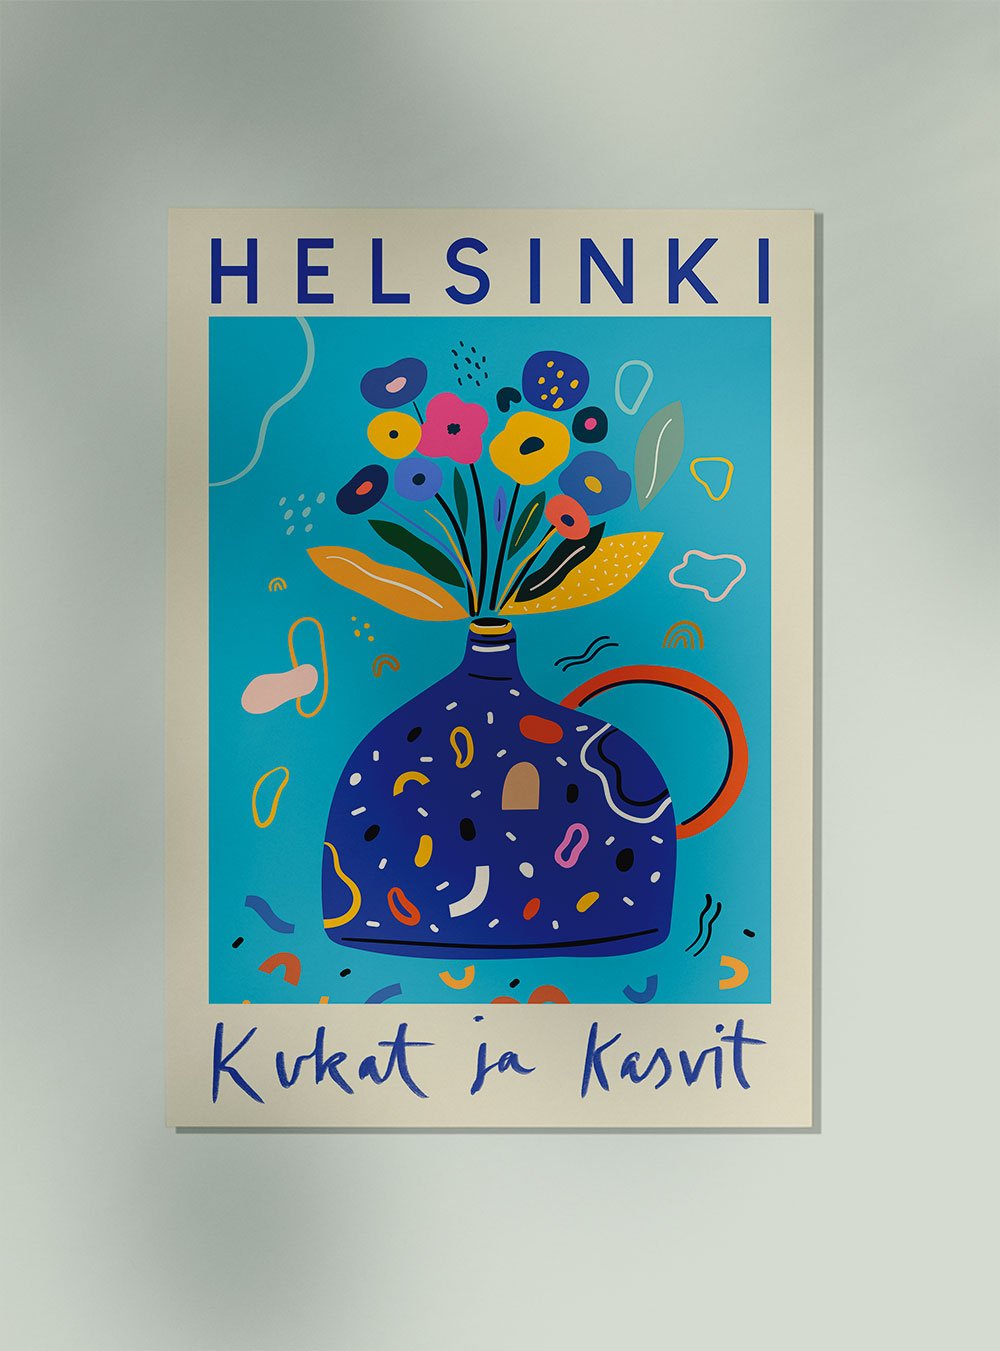 Helsinki Flower Market Poster